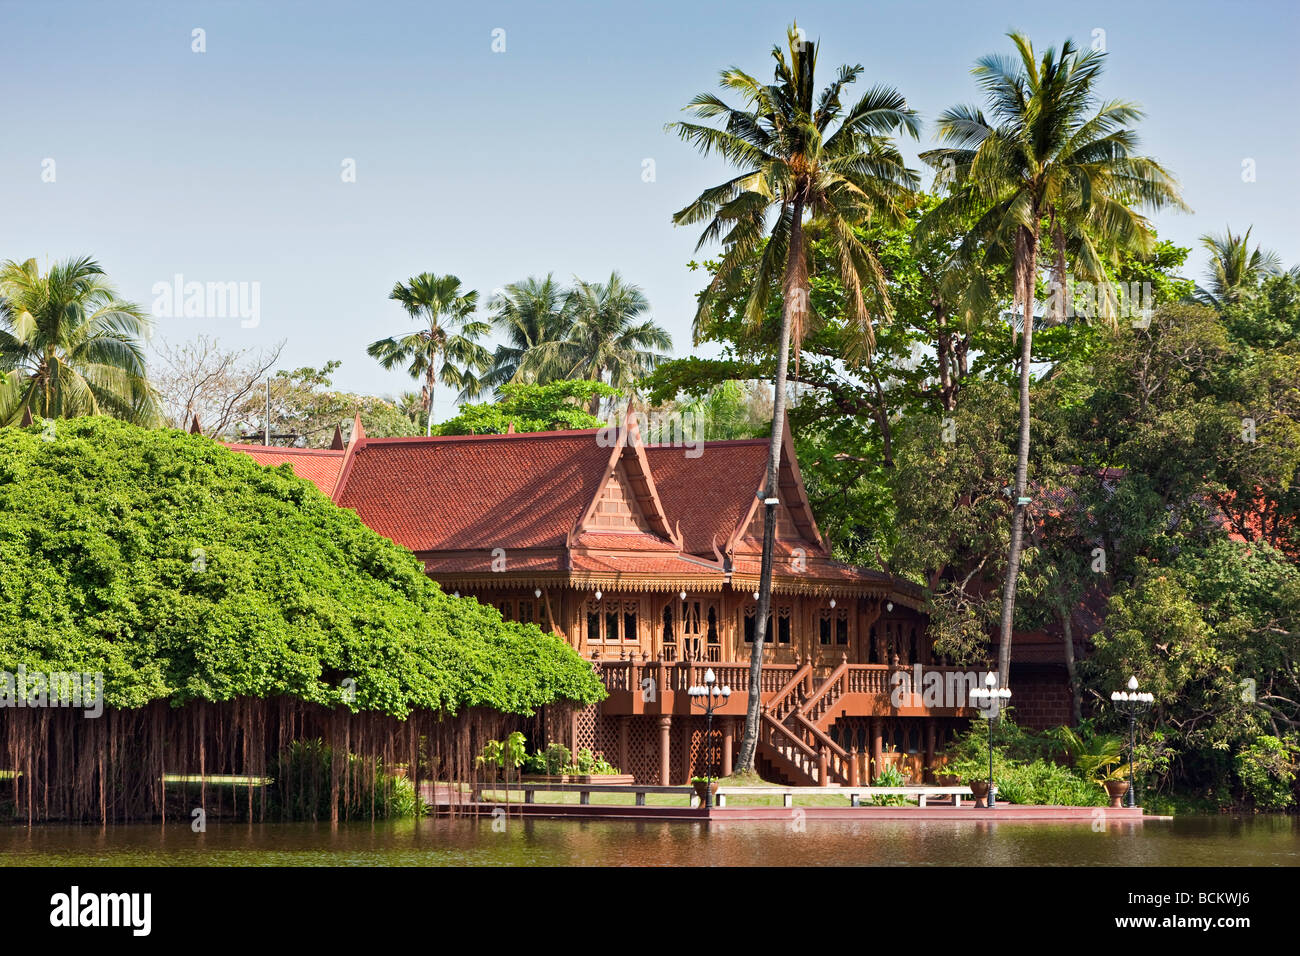 La Thaïlande. Une typique maison en bois de style thaïlandais utilisé comme guest cottage de Rose Garden un complexe touristique situé dans 75 acres. Banque D'Images